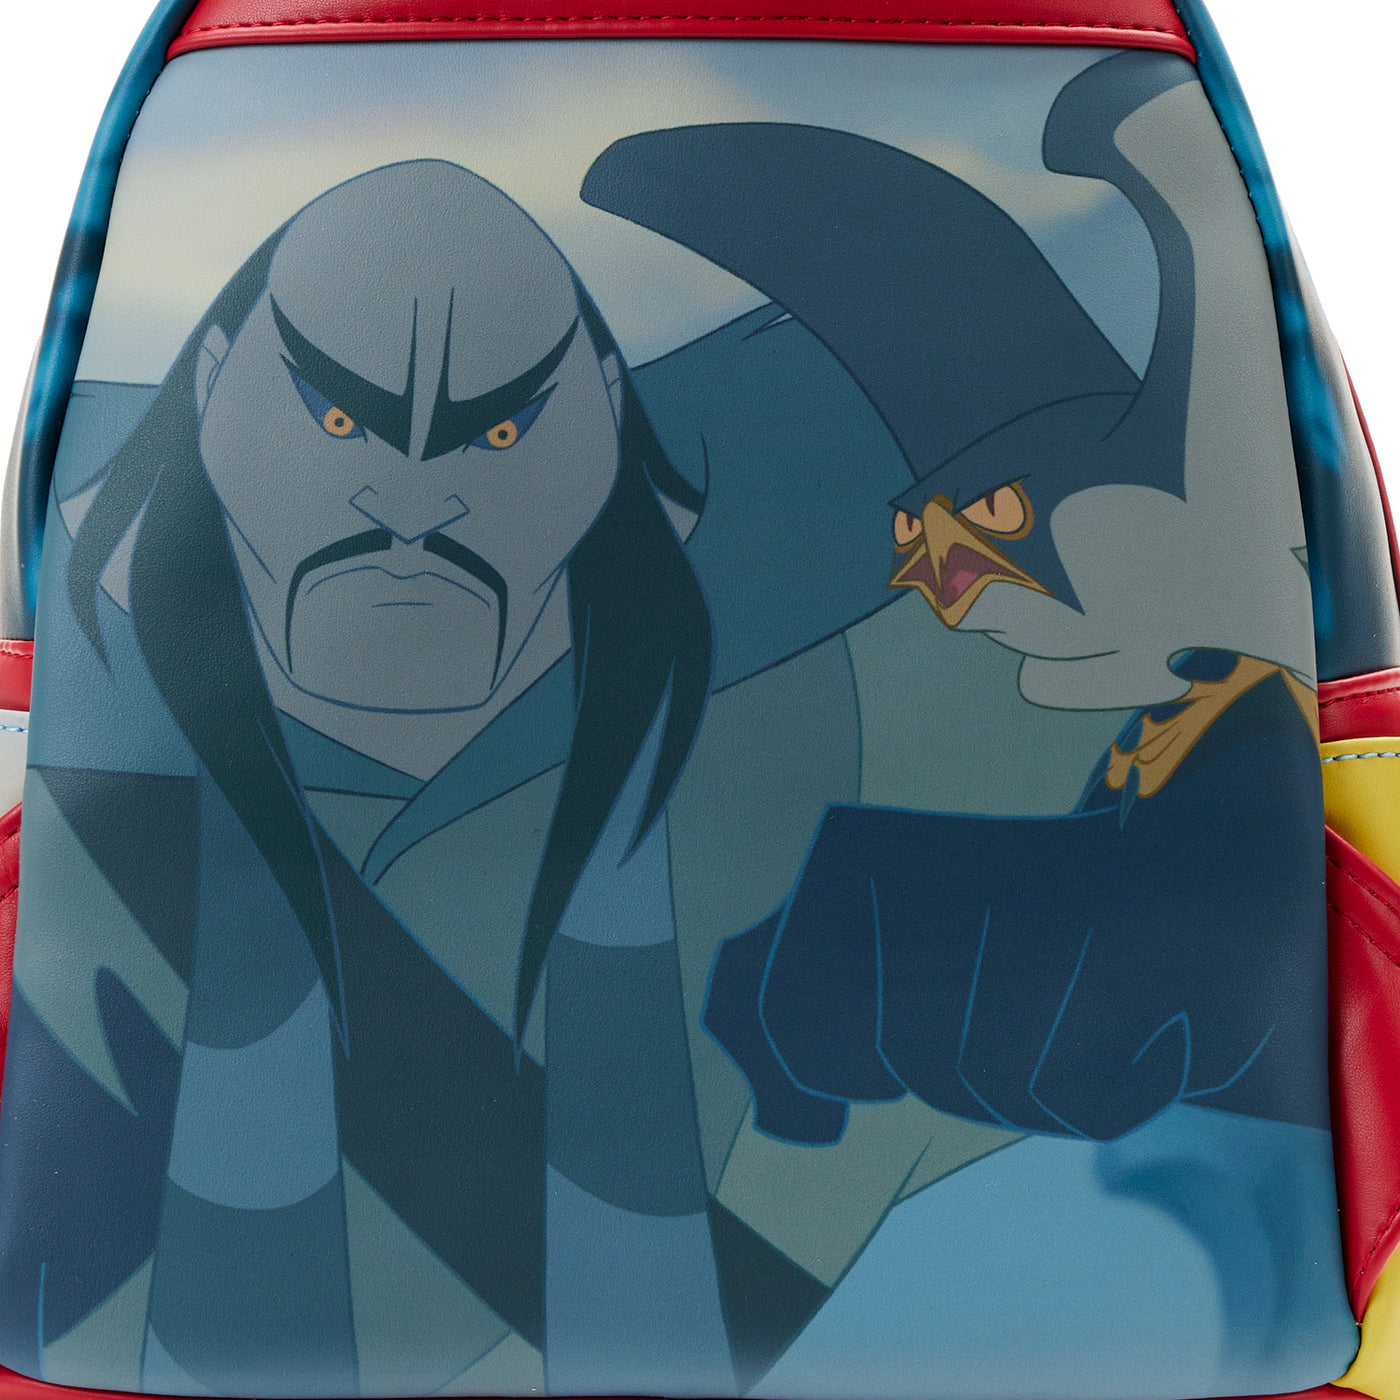 Disney Mulan Princess Scene Mini Backpack